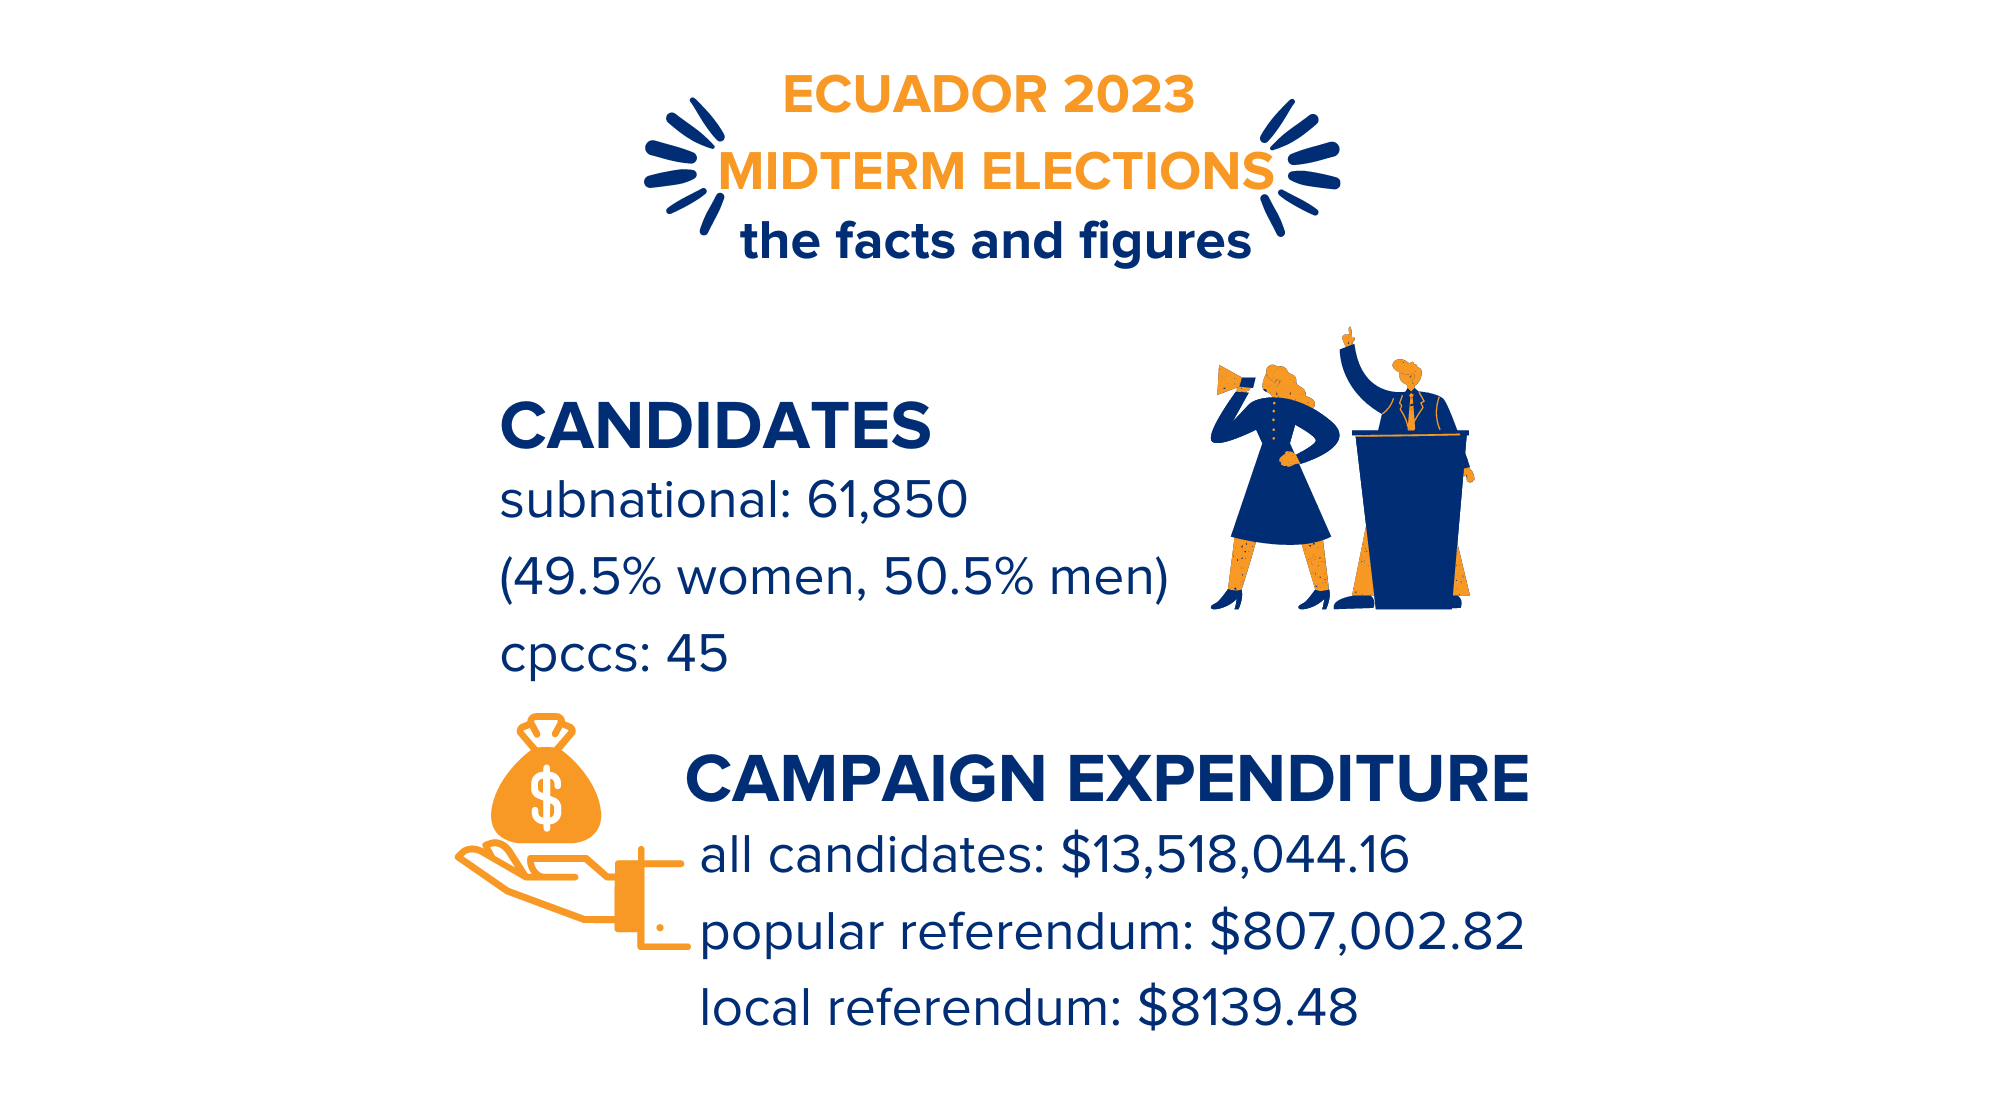 Ecuador 2023 Midterm Elections IFES The International Foundation